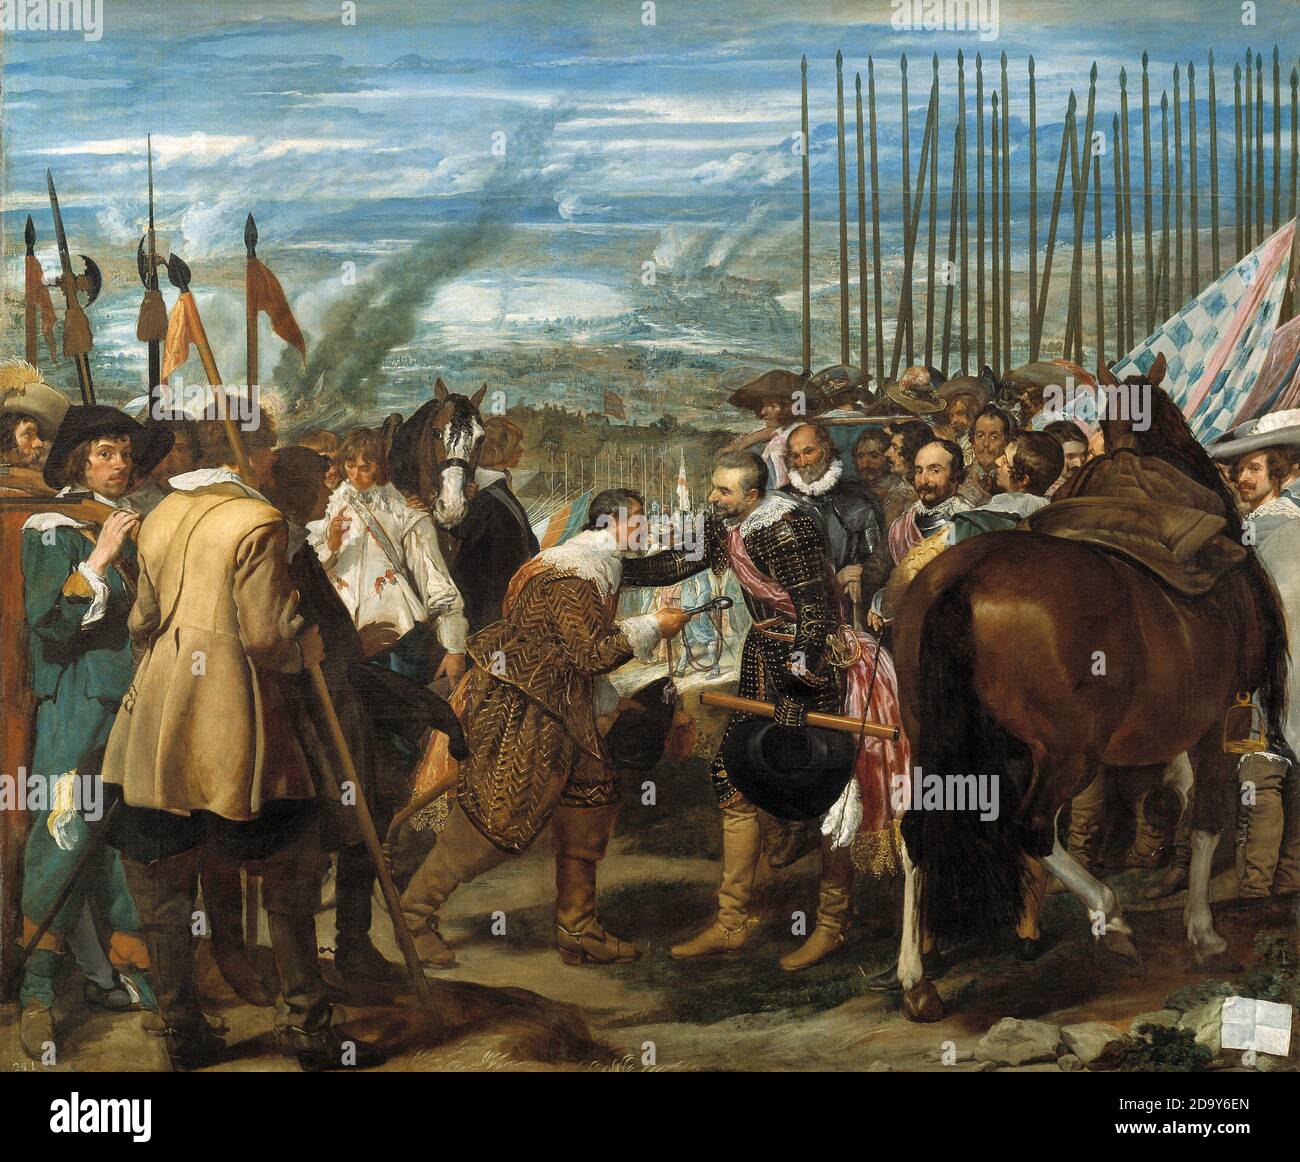 Title: The Surrender of Breda Creator: Diego Rodriguez de Silva y Velazquez Date: c.1635  Medium: Oil on canvas Dimension: 307 x 367 cm Location: Prado, Madrid Stock Photo